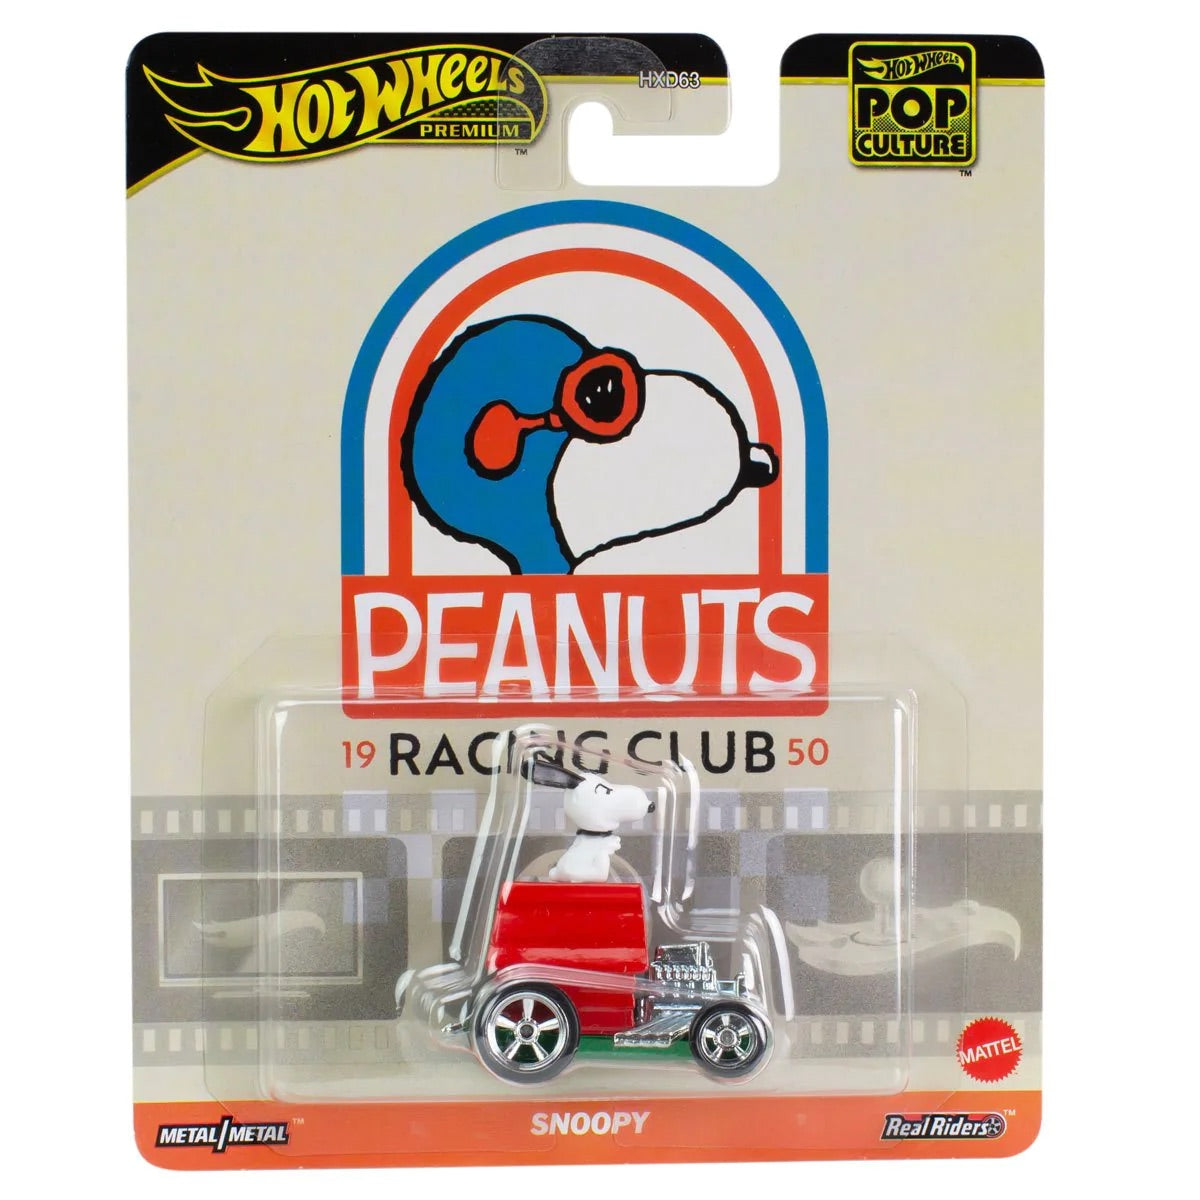 Hot Wheels Pop Culture B Case 'Peanuts Racing Club' Snoopy